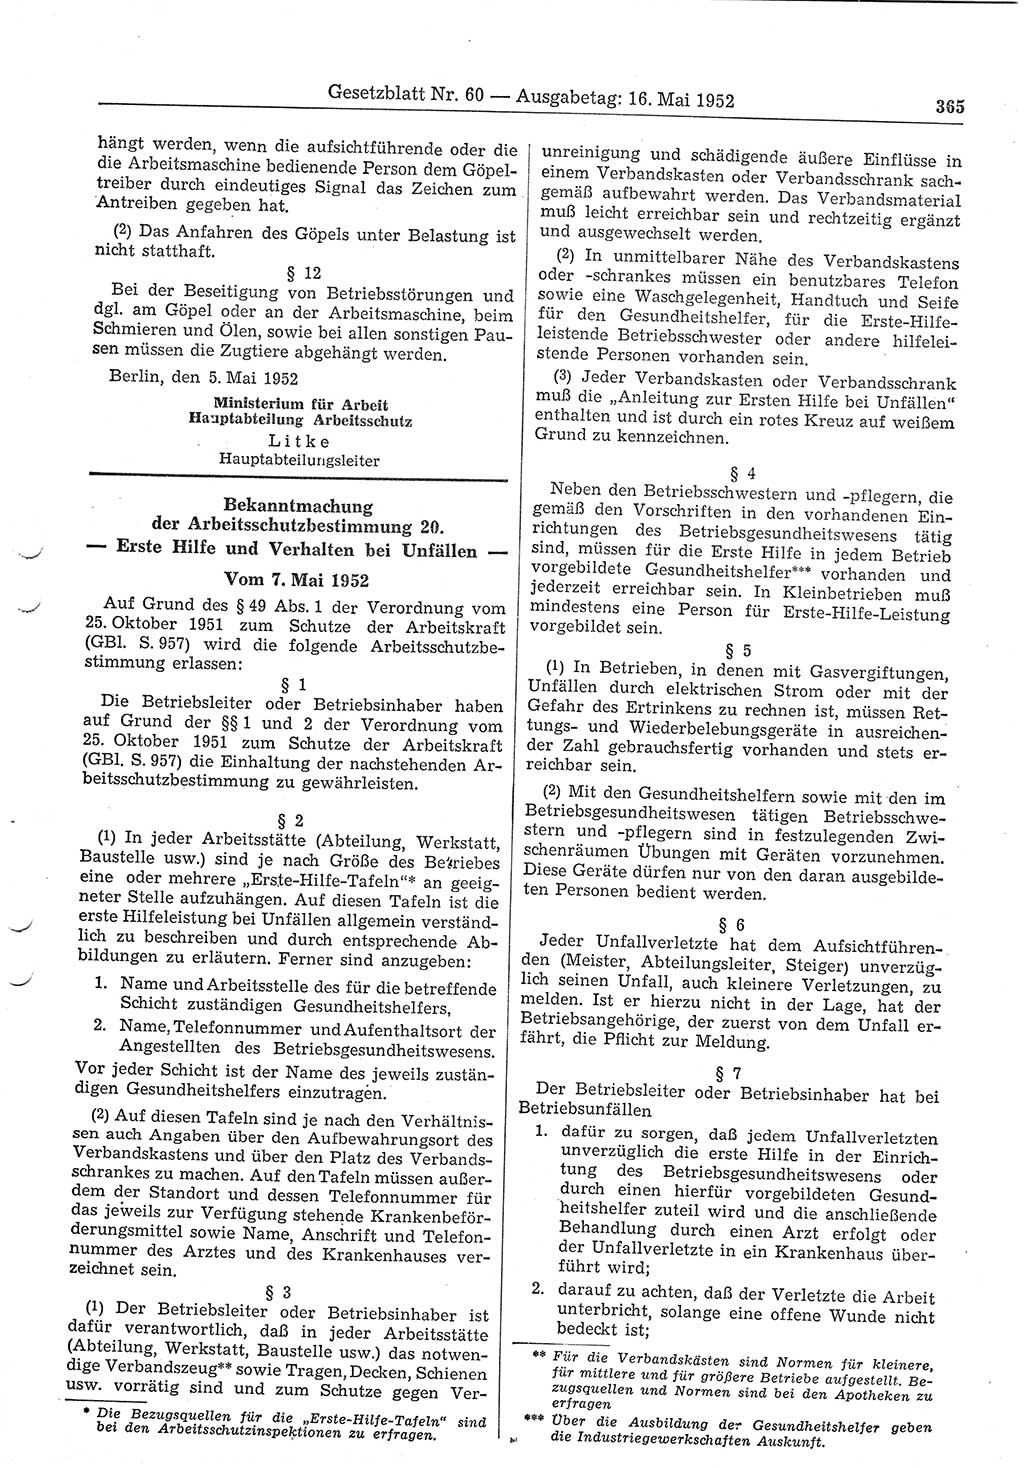 Gesetzblatt (GBl.) der Deutschen Demokratischen Republik (DDR) 1952, Seite 365 (GBl. DDR 1952, S. 365)